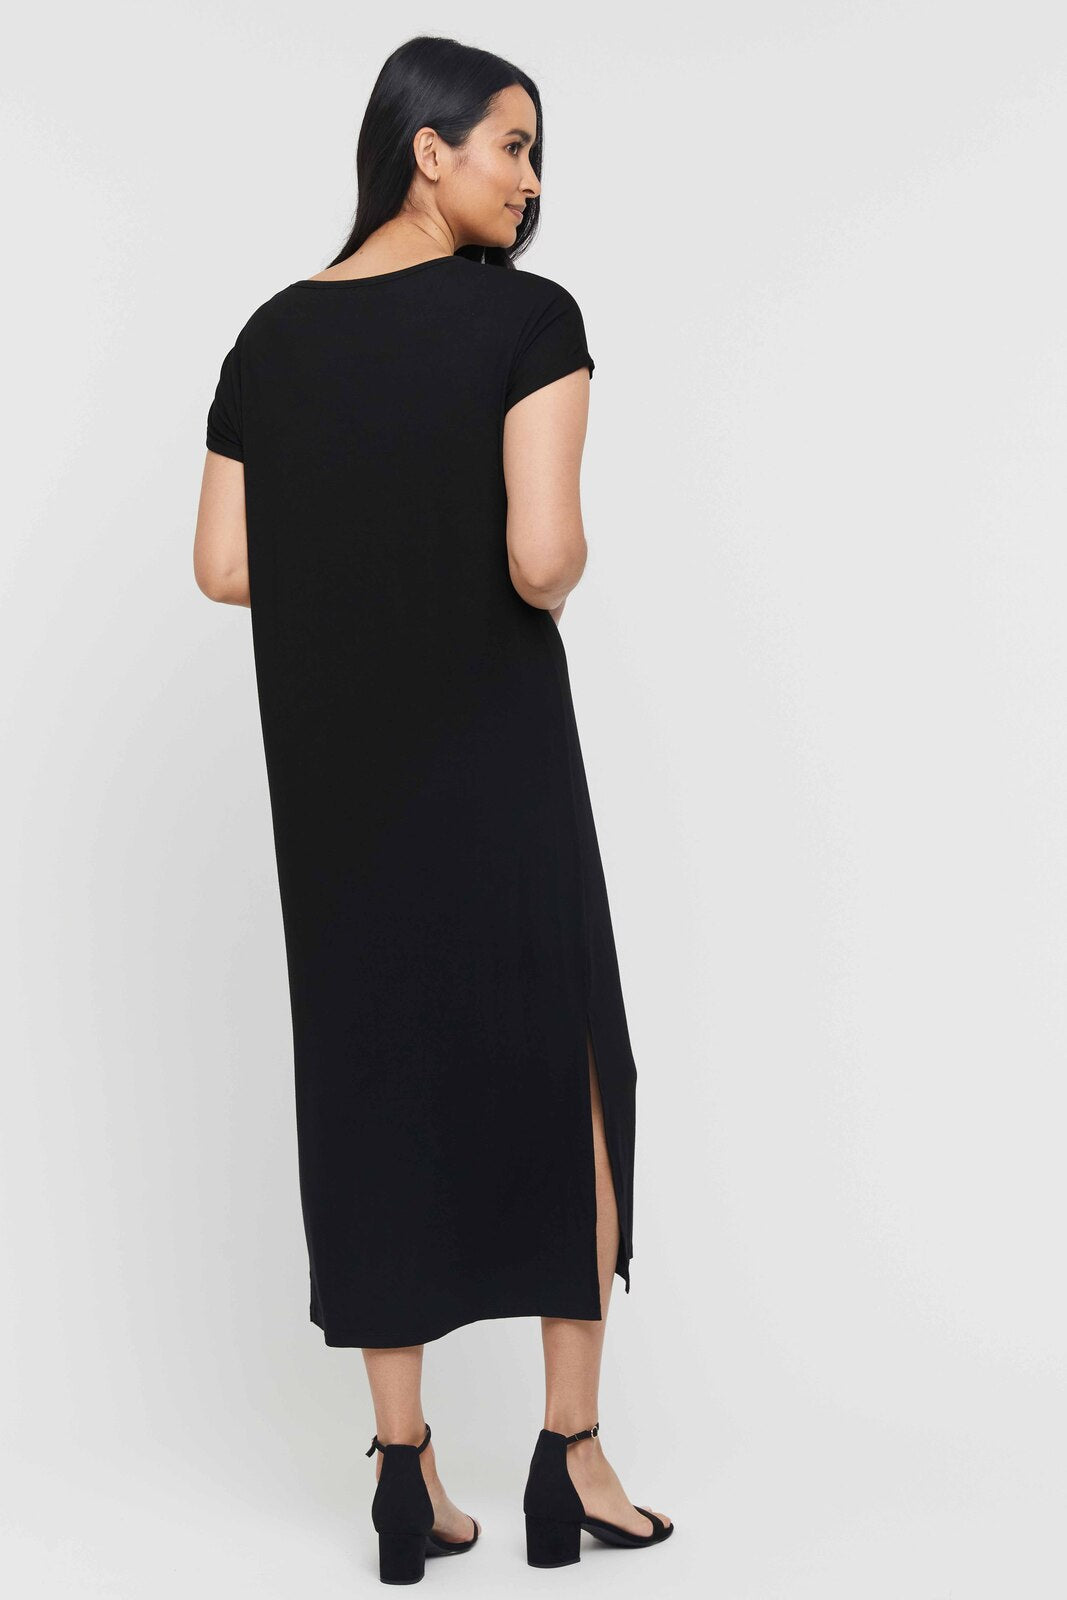 Elsie Dress - Black | Bamboo Body